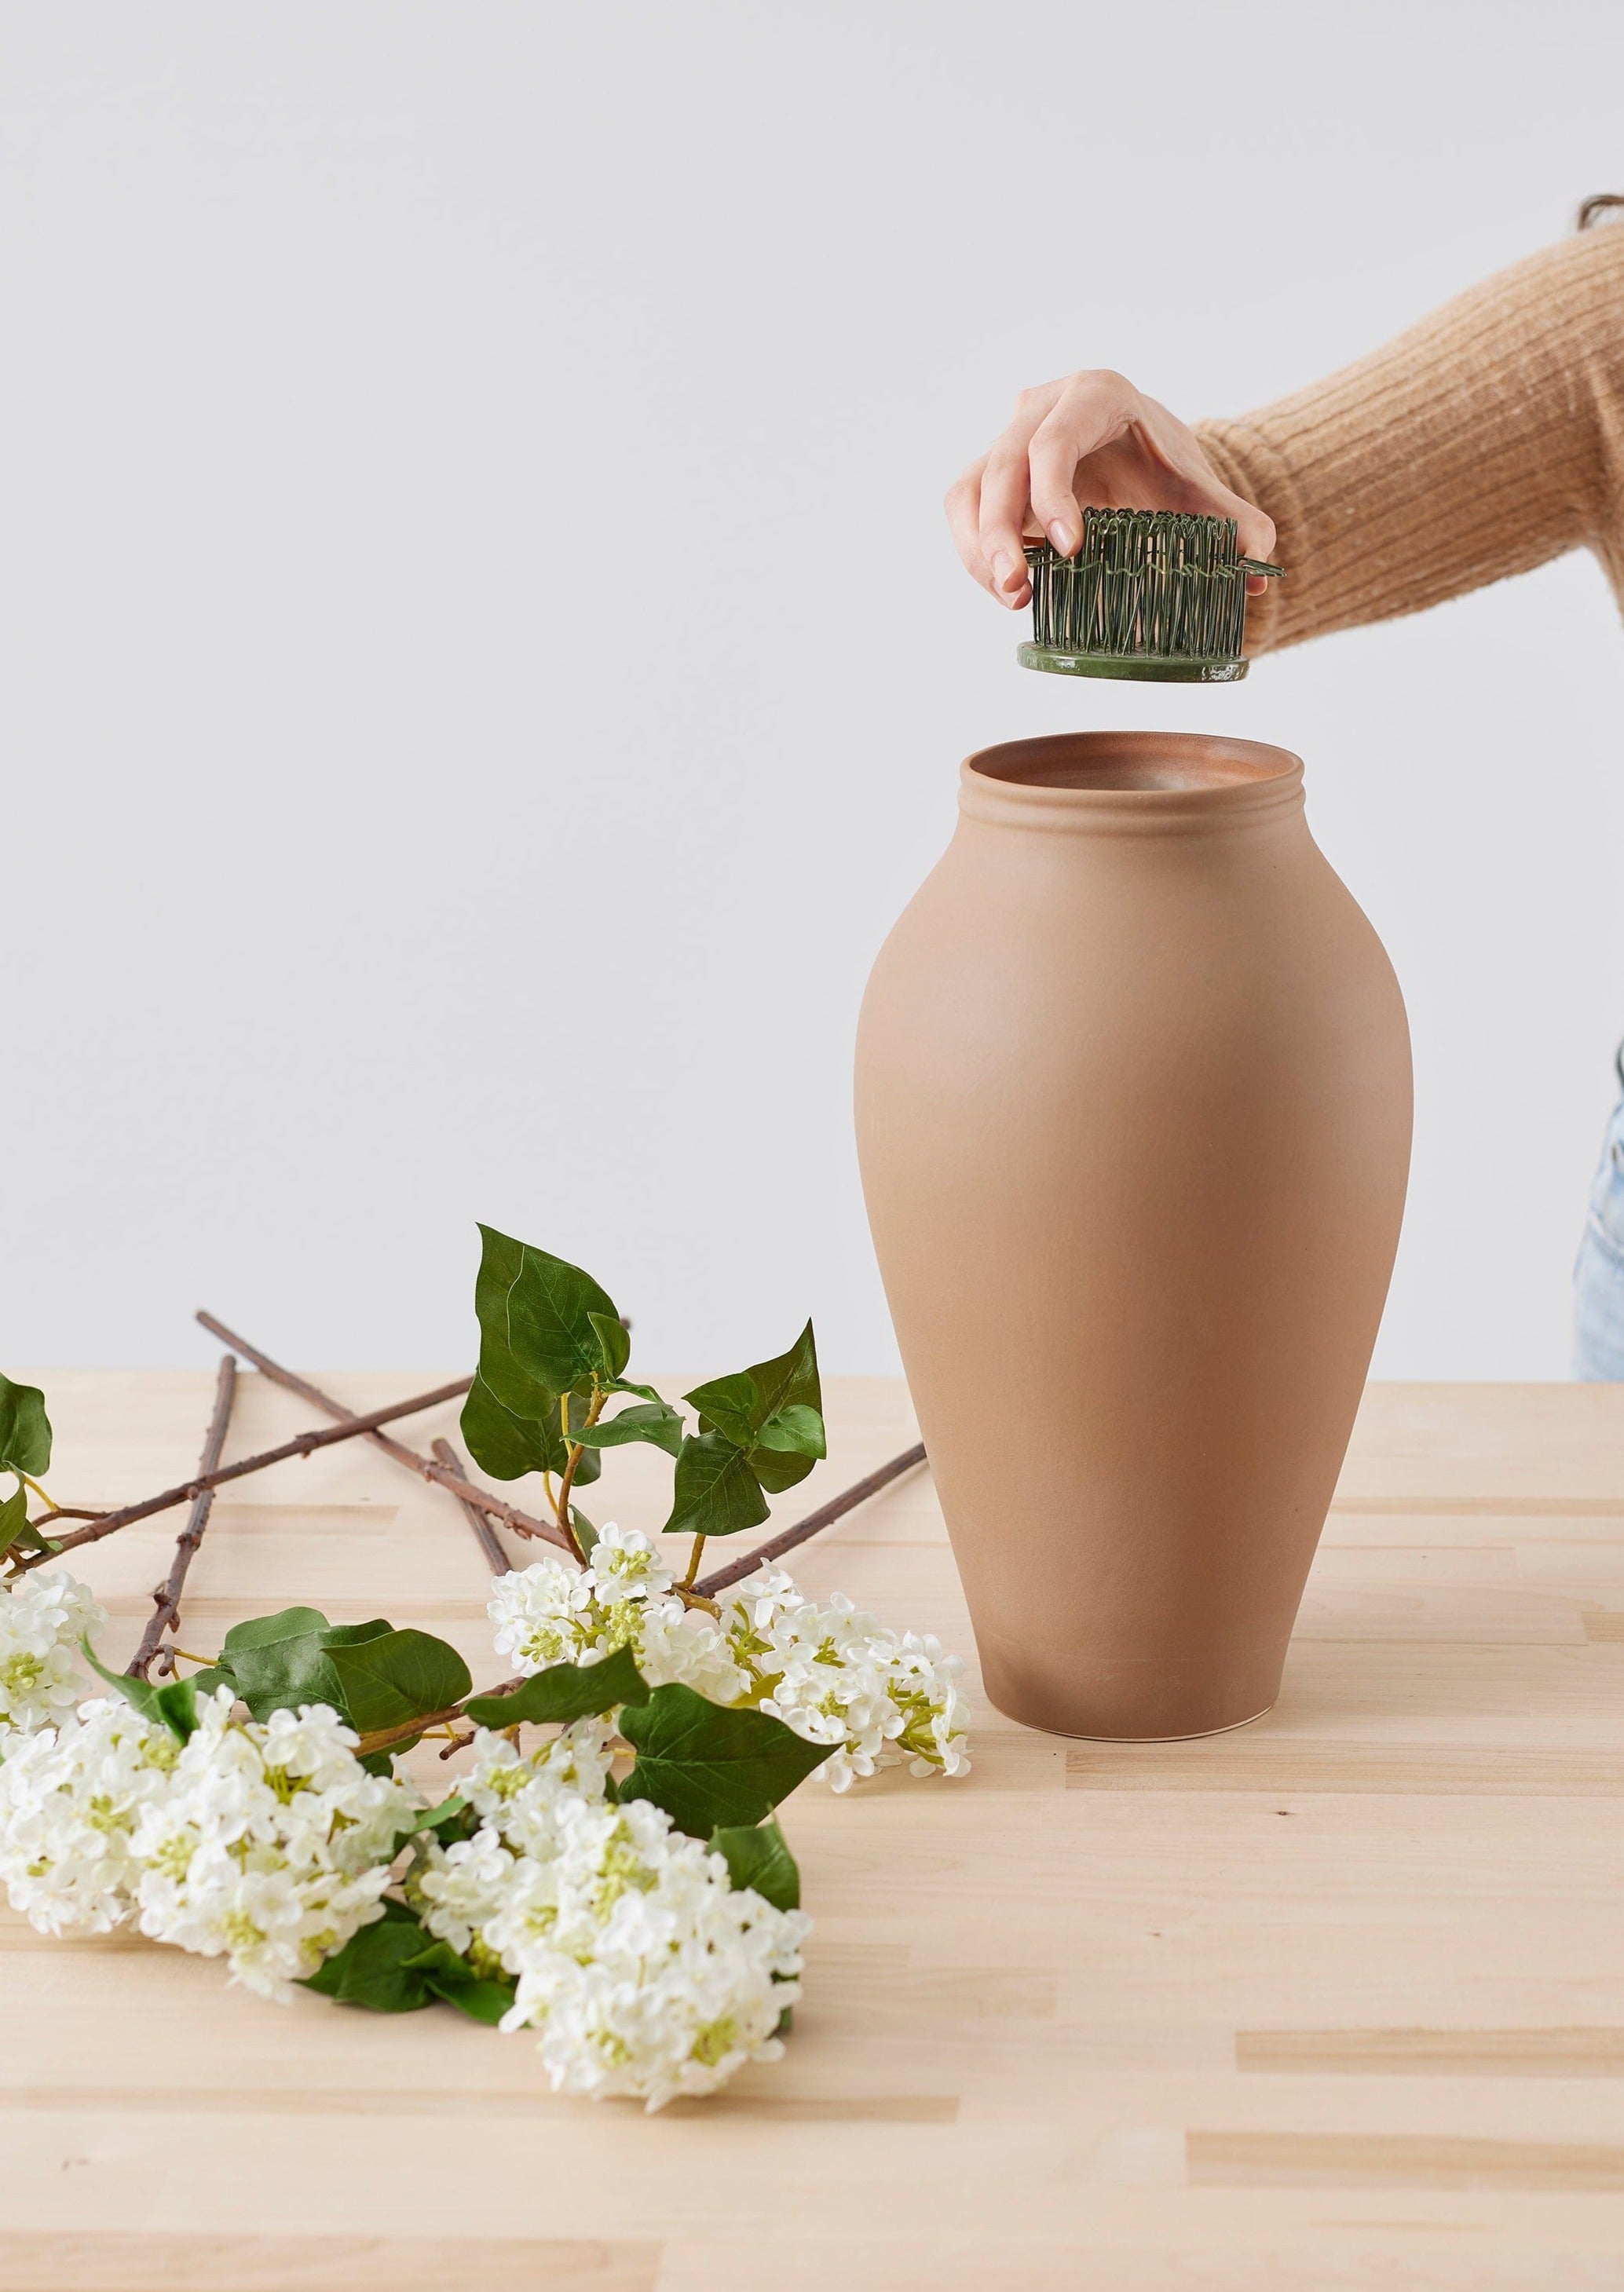 Terra Cotta Frog Vases for Flower Arrangement